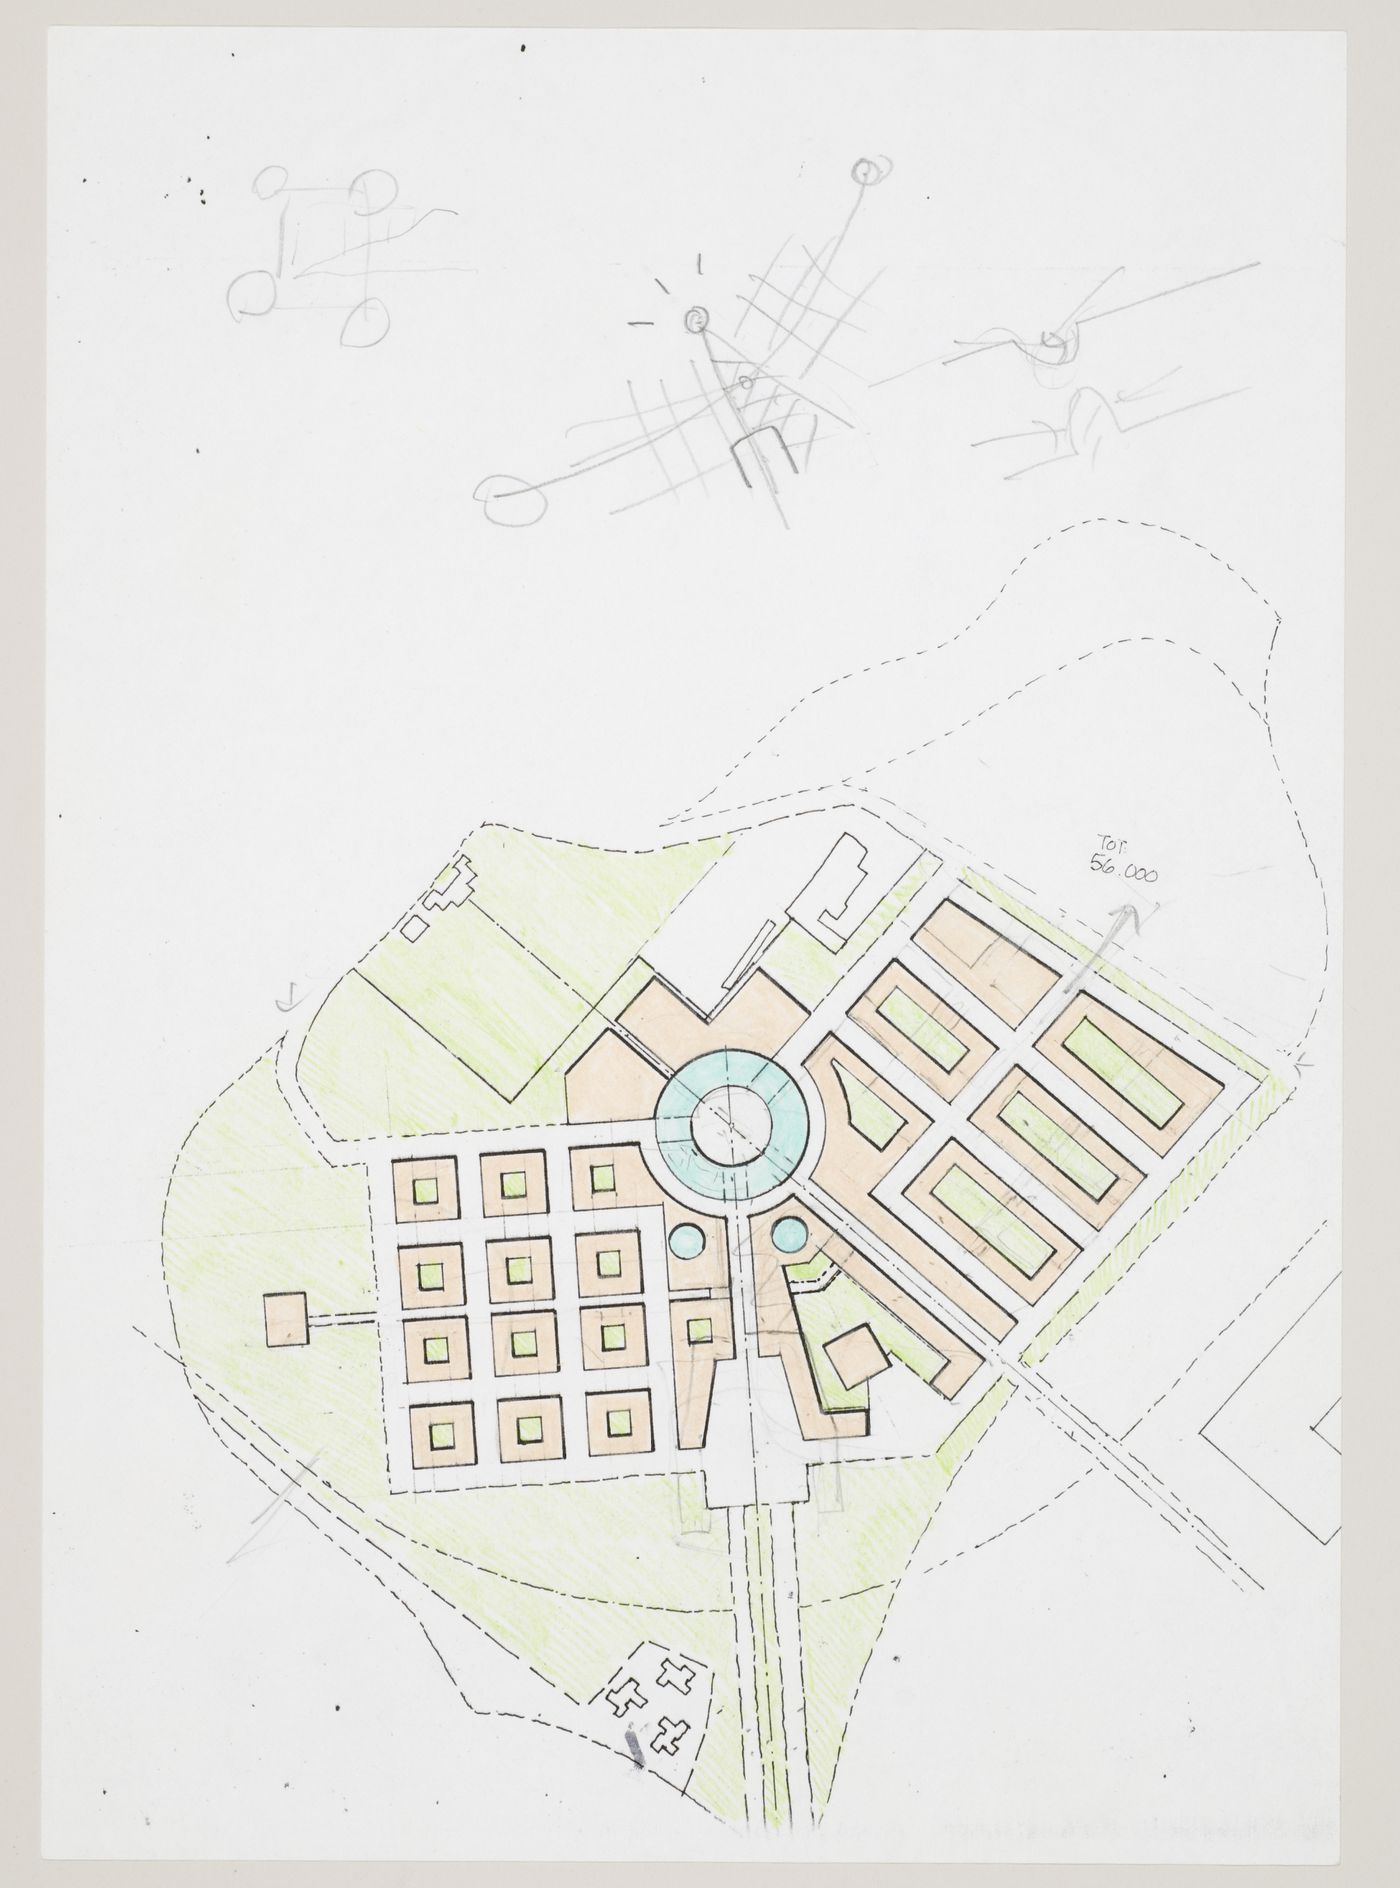 New Town Centre, Caselecchio di Reno, Italy: plan and sketches